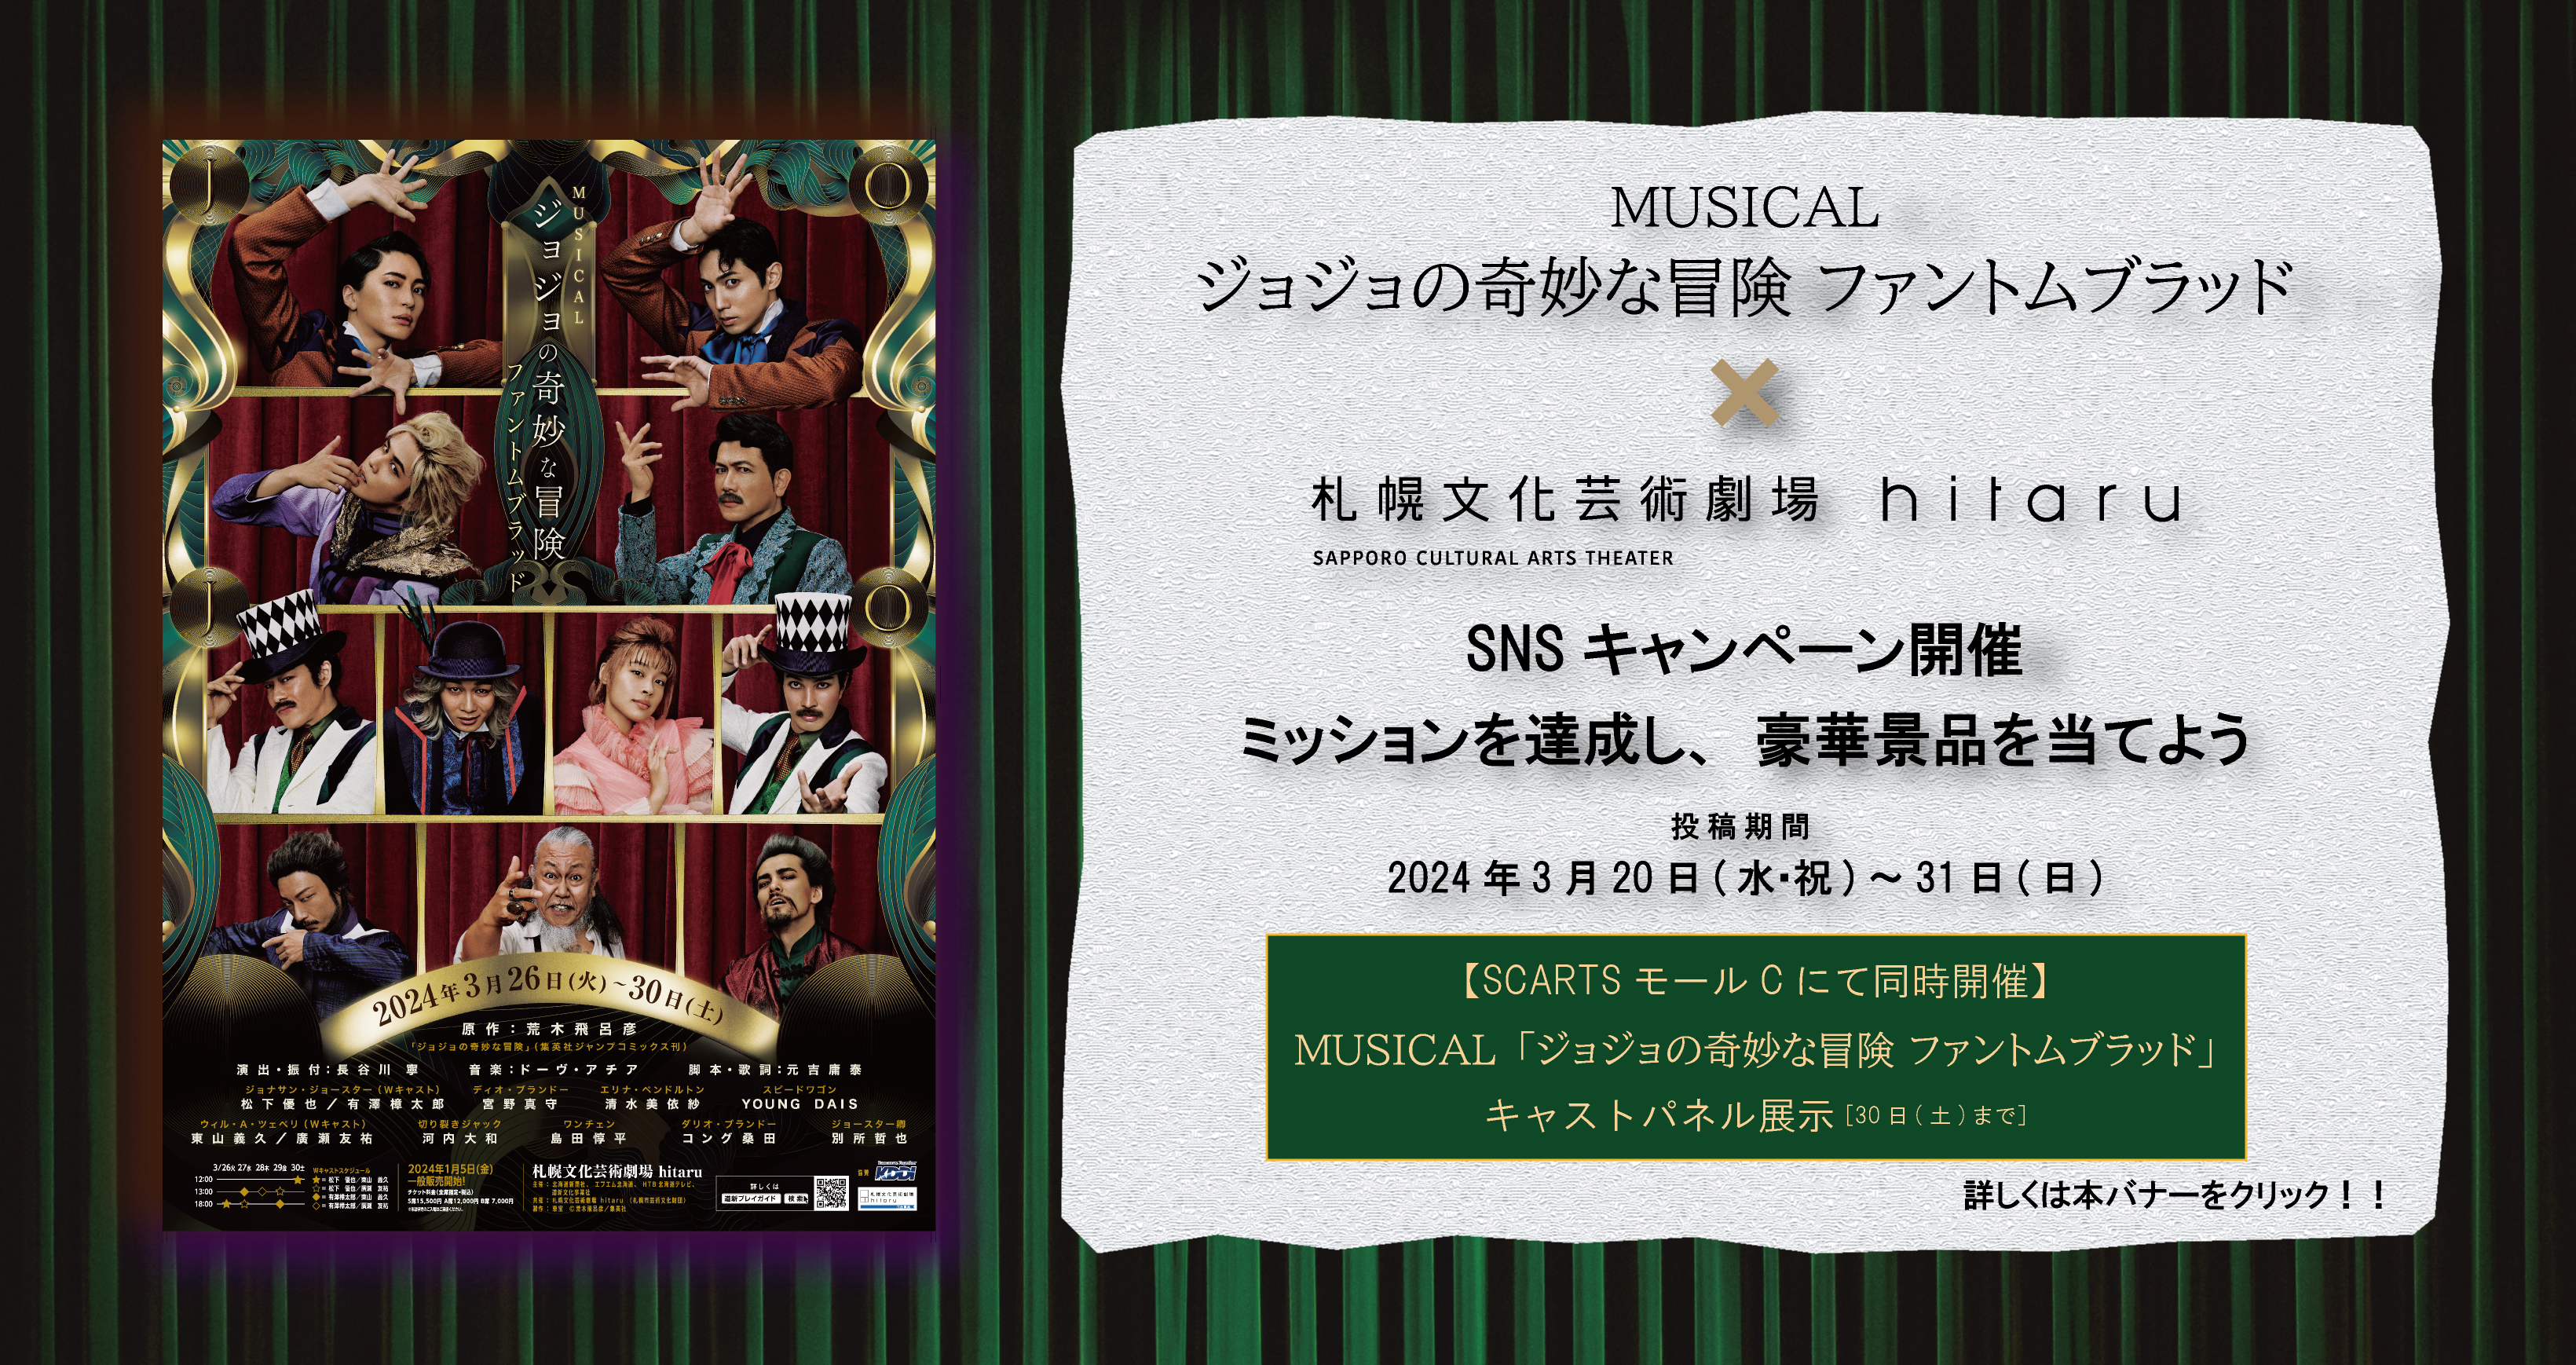 ミュージカル「ジョジョの奇妙な冒険 ファントムブラッド」×札幌文化芸術劇場 hitaru SNSキャンペーン3月20日(水・祝) から3月31日(日)まで開催！イメージ